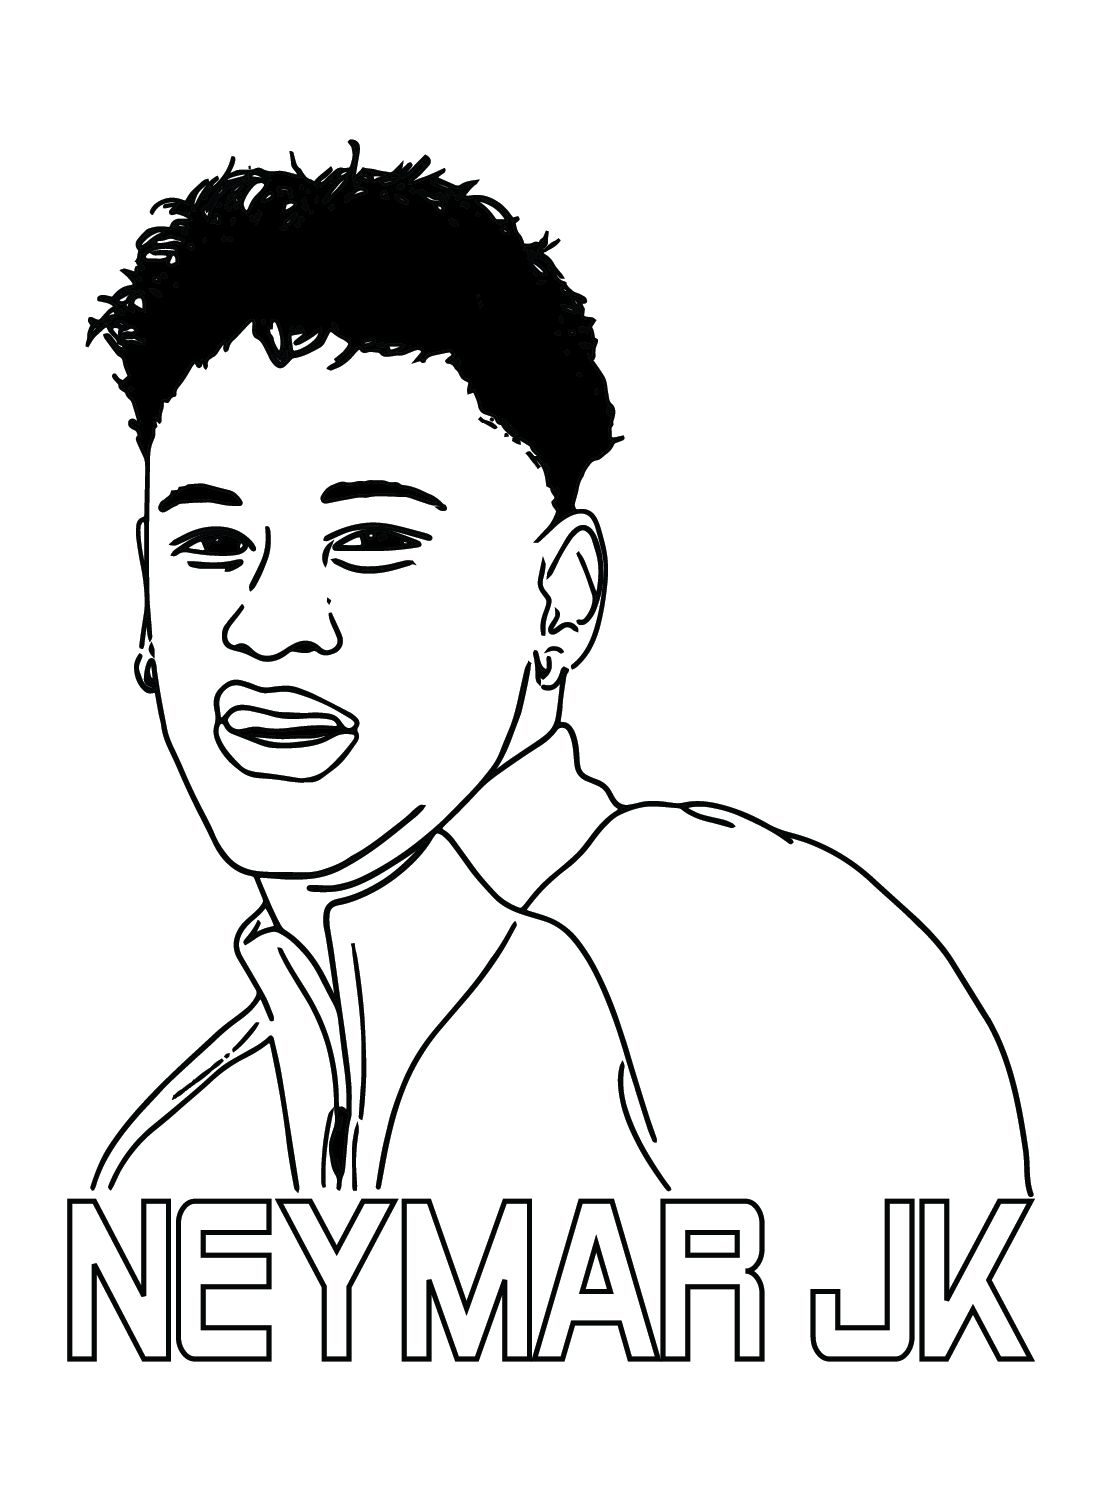 Neymar imprimirá de Neymar